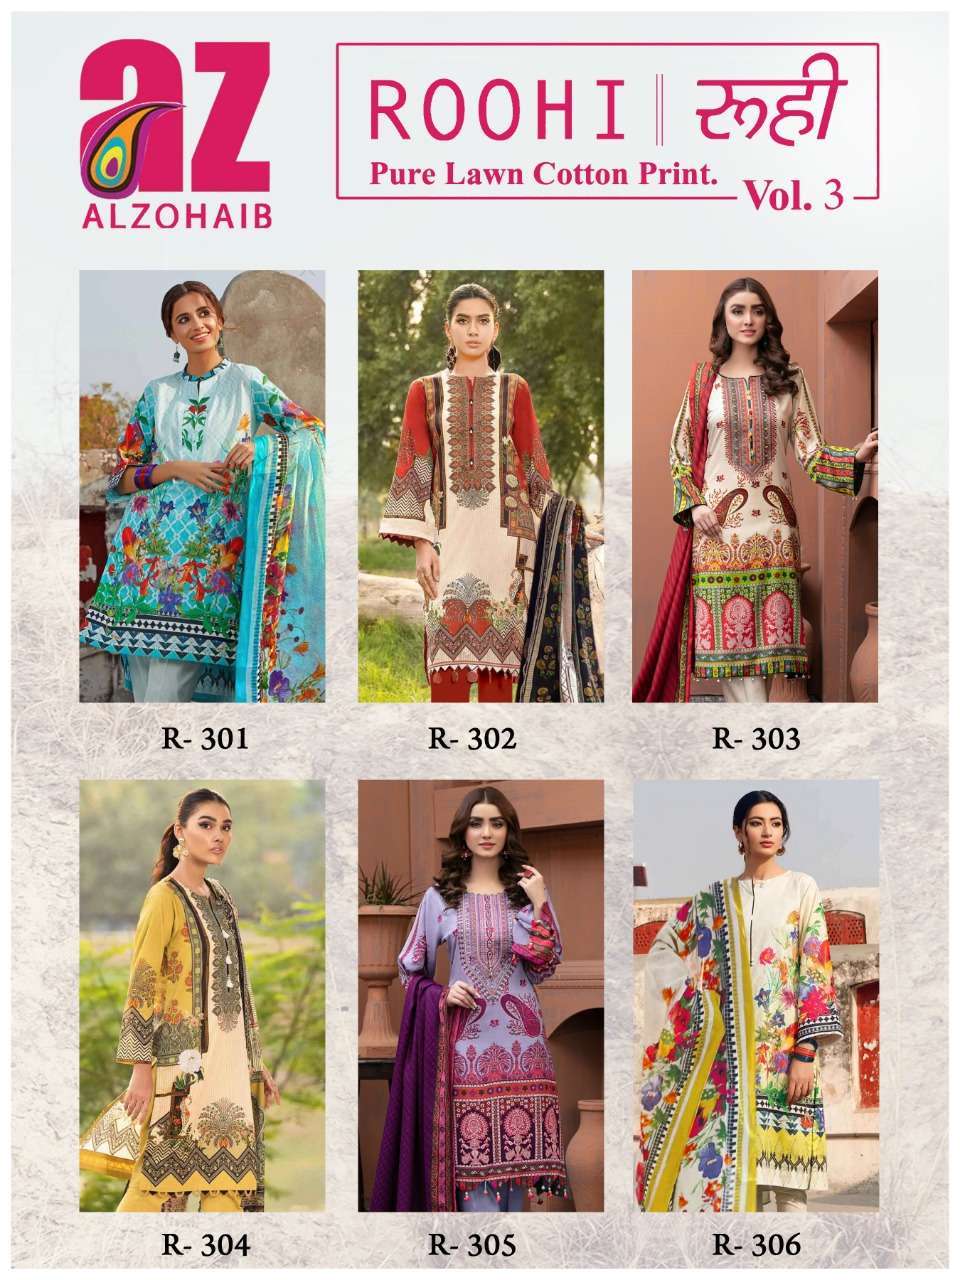 al zohaib roohi vol 3 pure lawn cotton salwar kameez wholesale price surat